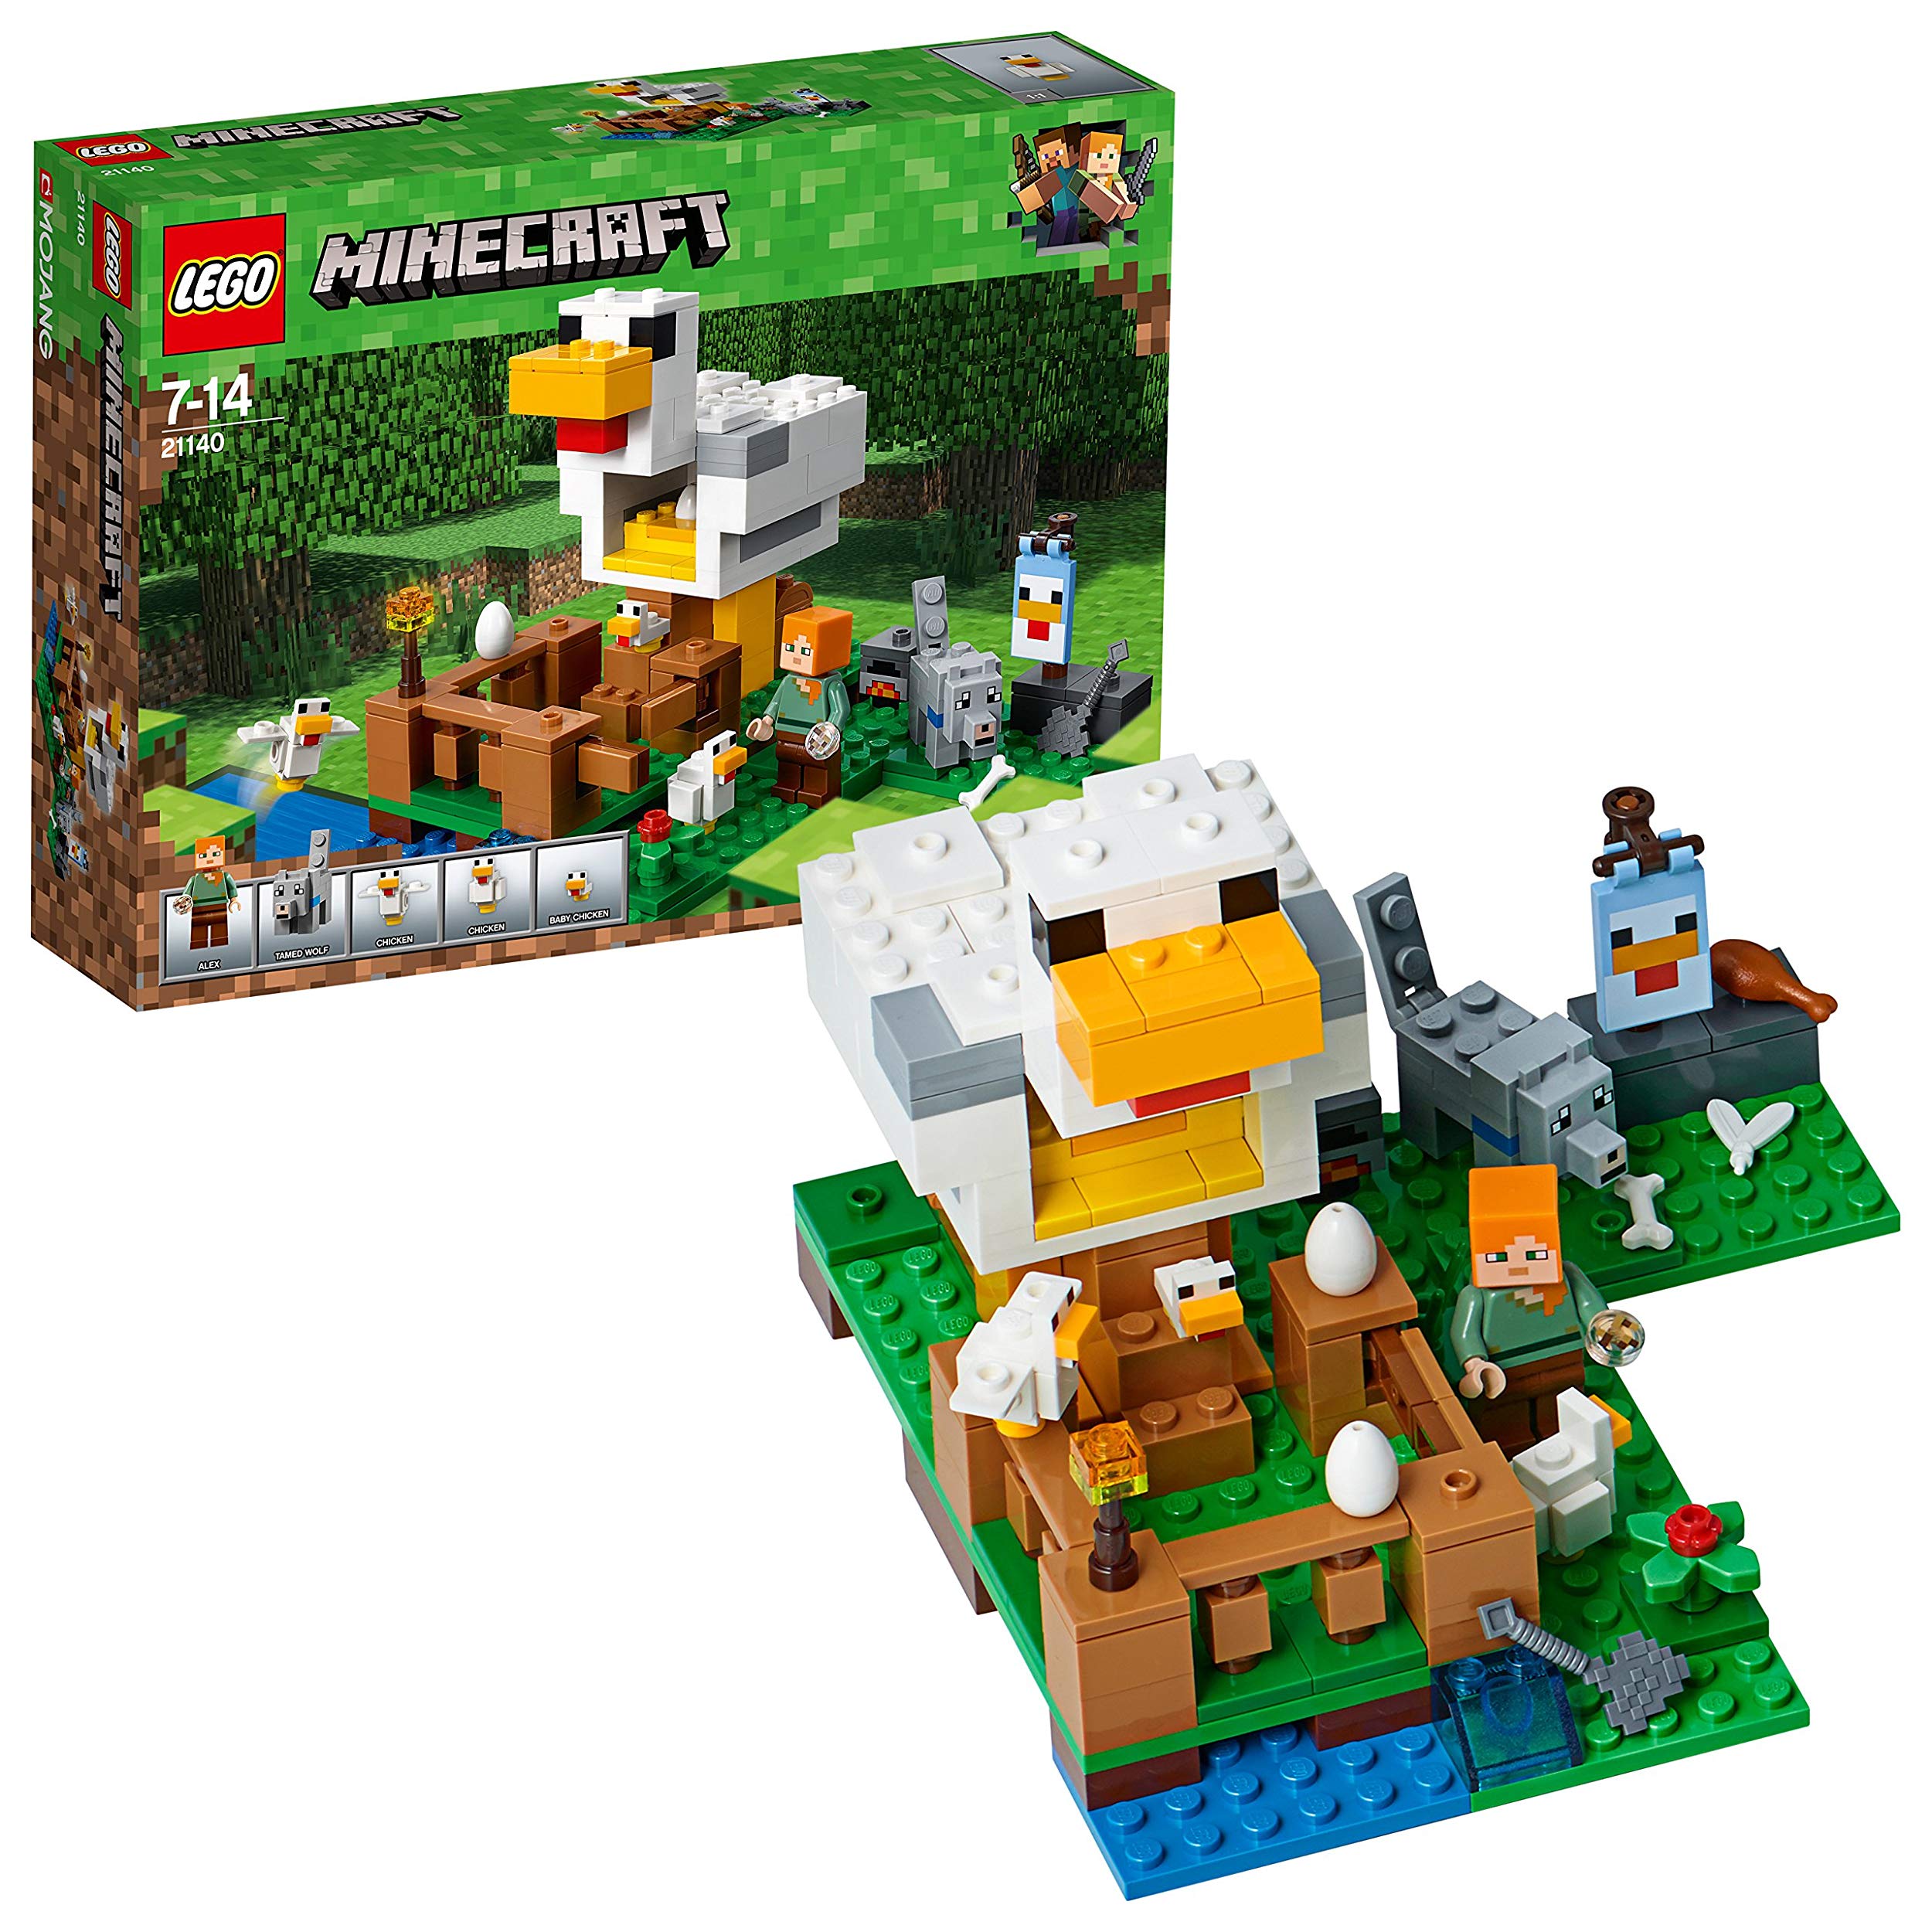 Lego Minecraft Chicken Coop Entertainment Toy